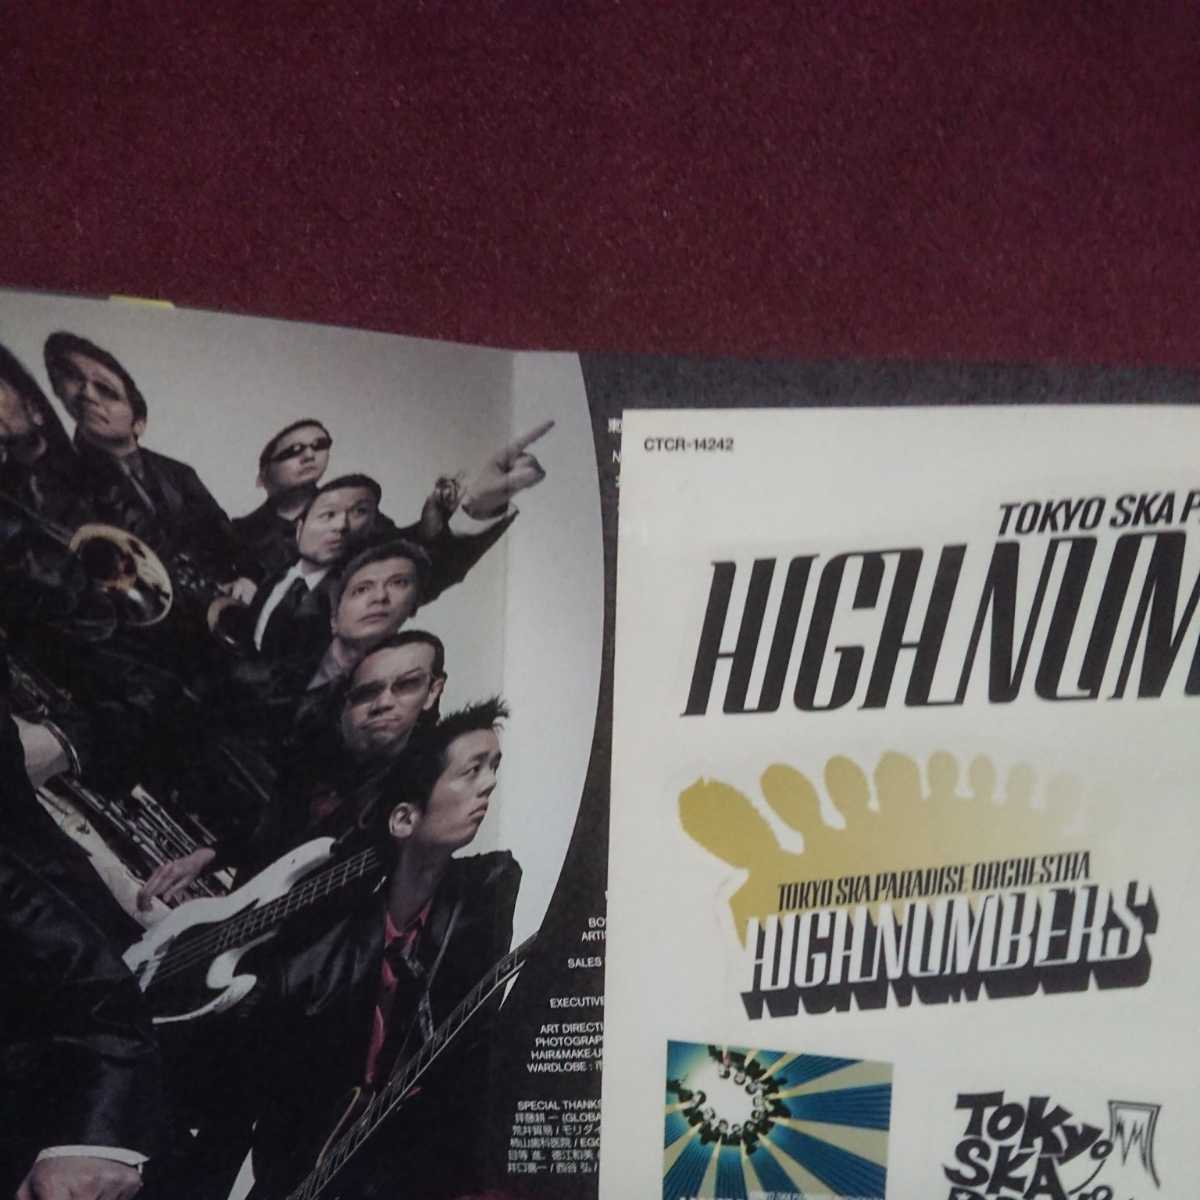 ◎ 東京スカパラダイスオーケストラ のアルバム「HIGHNUMBERS」 特殊紙ケースあり。_画像2